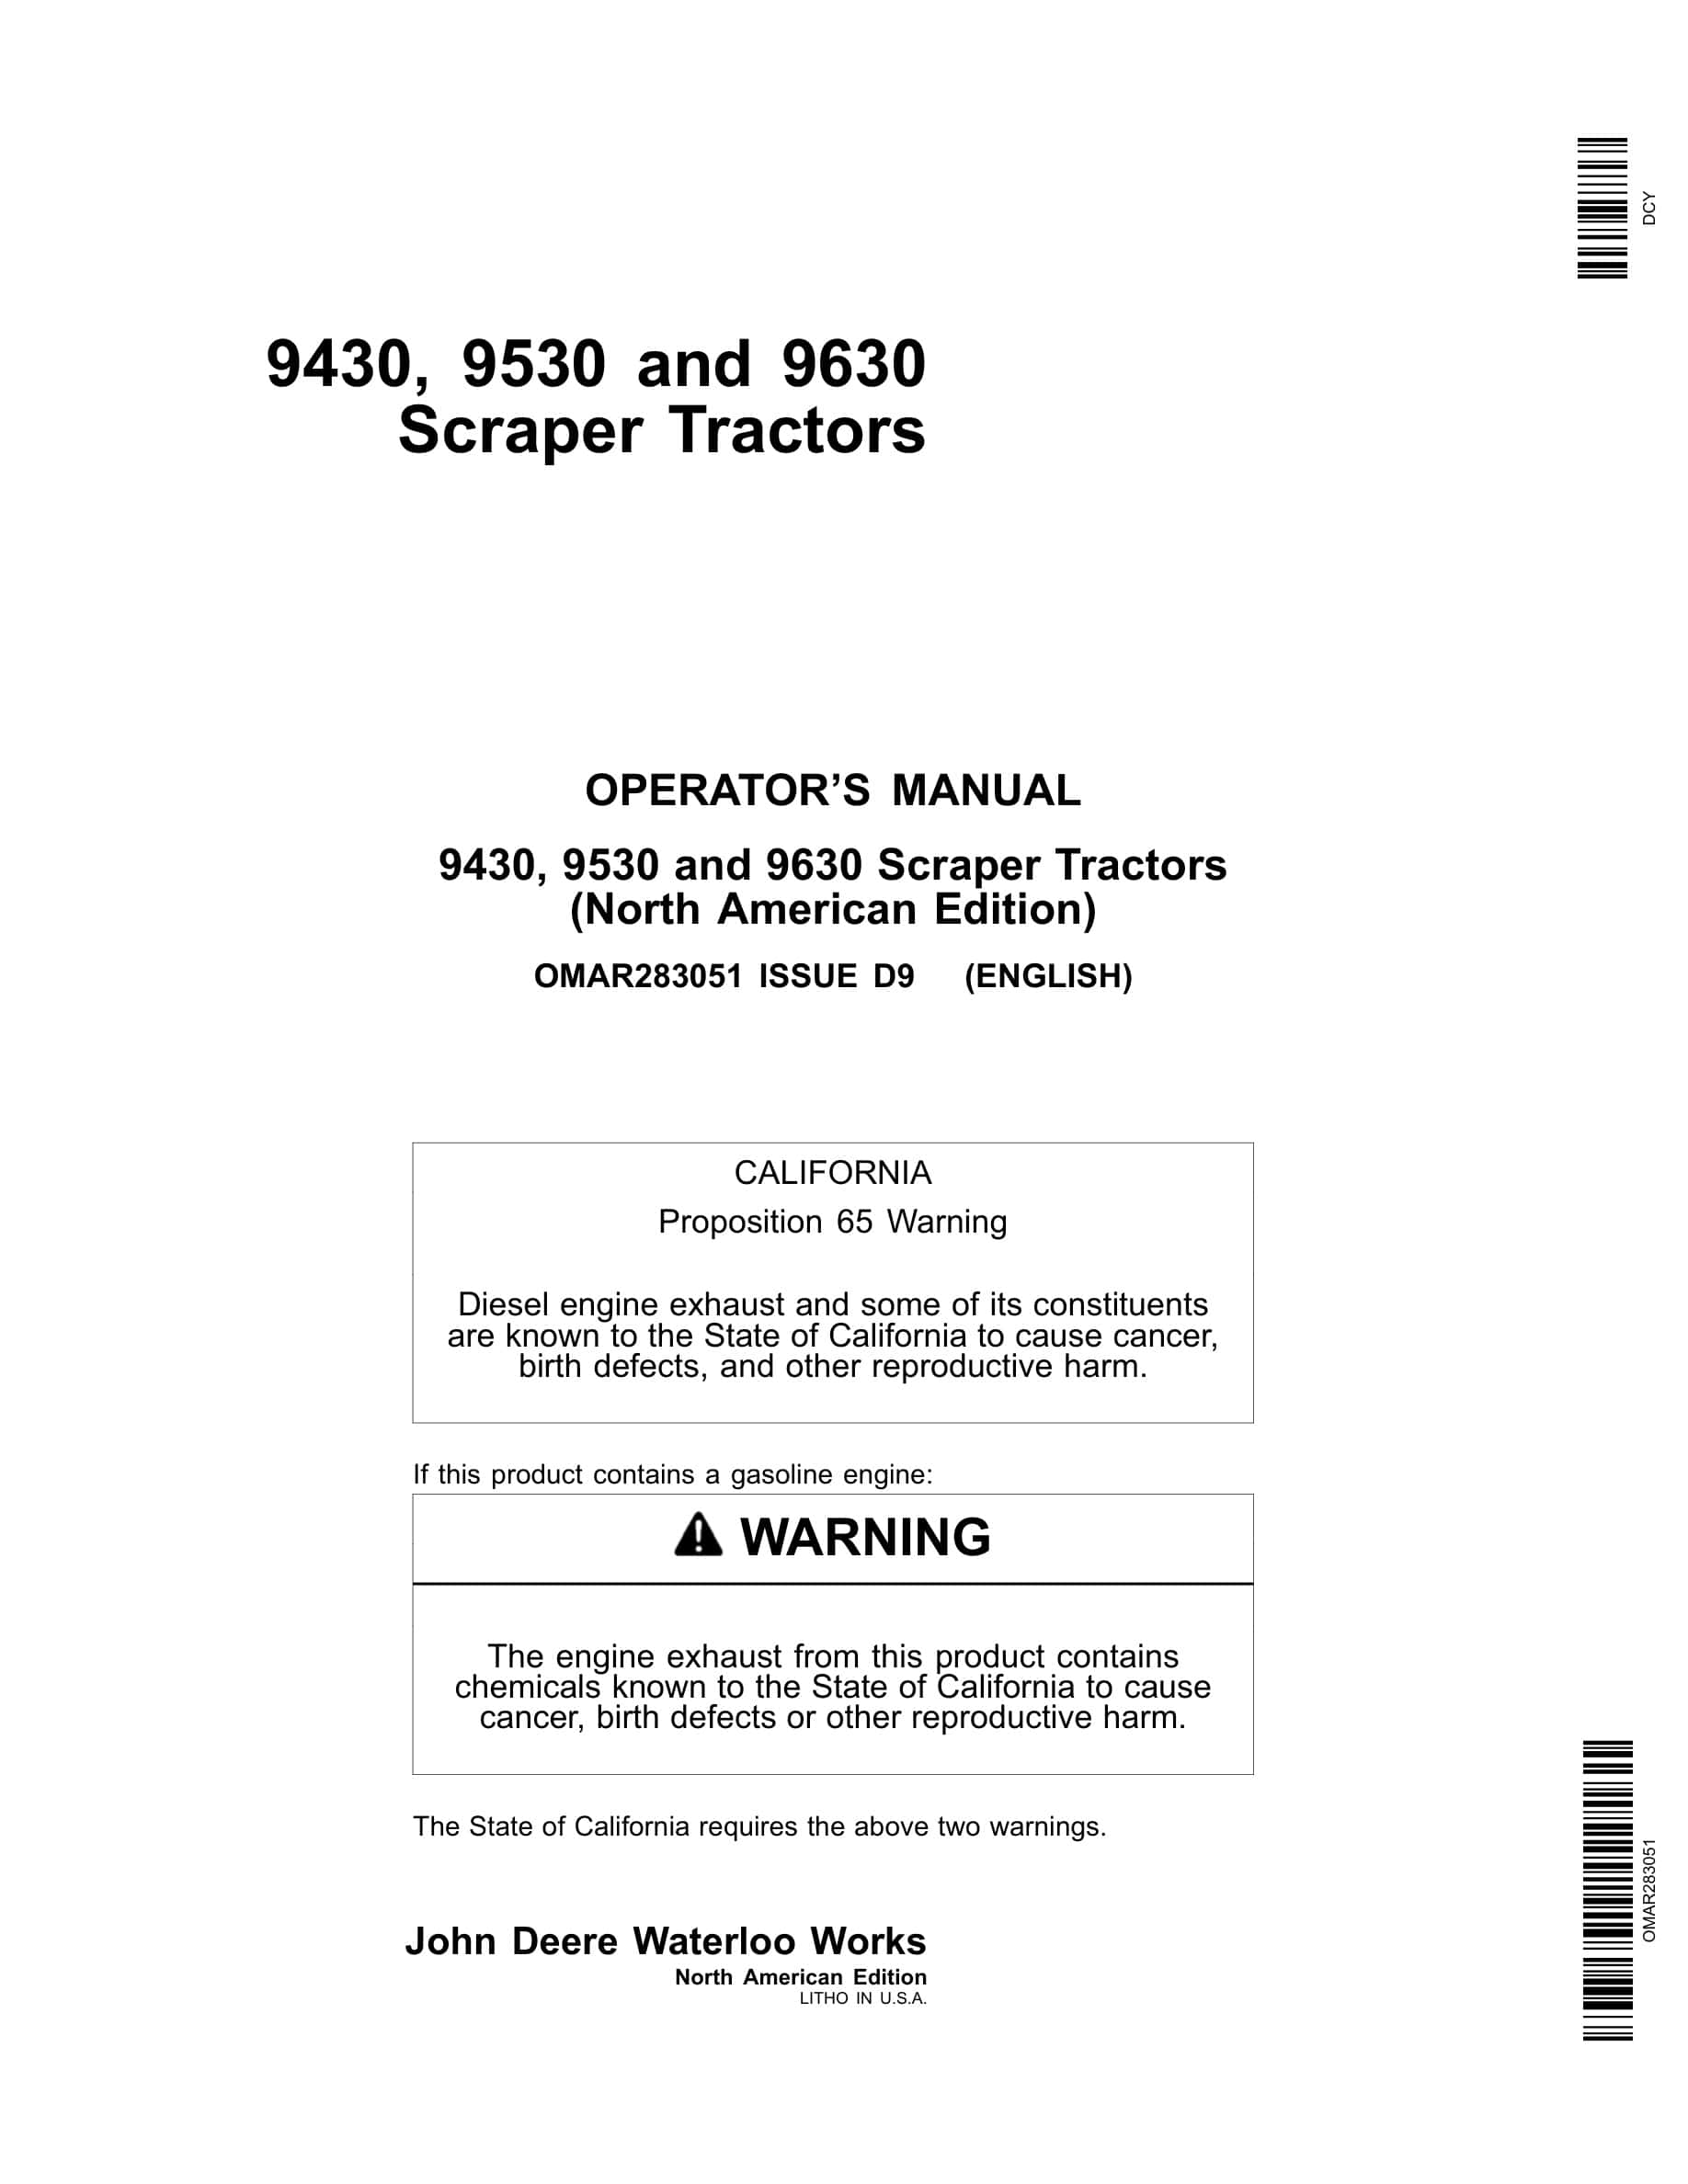 John Deere 9430 9530 9630 Tractor Operator Manual OMAR283051-1